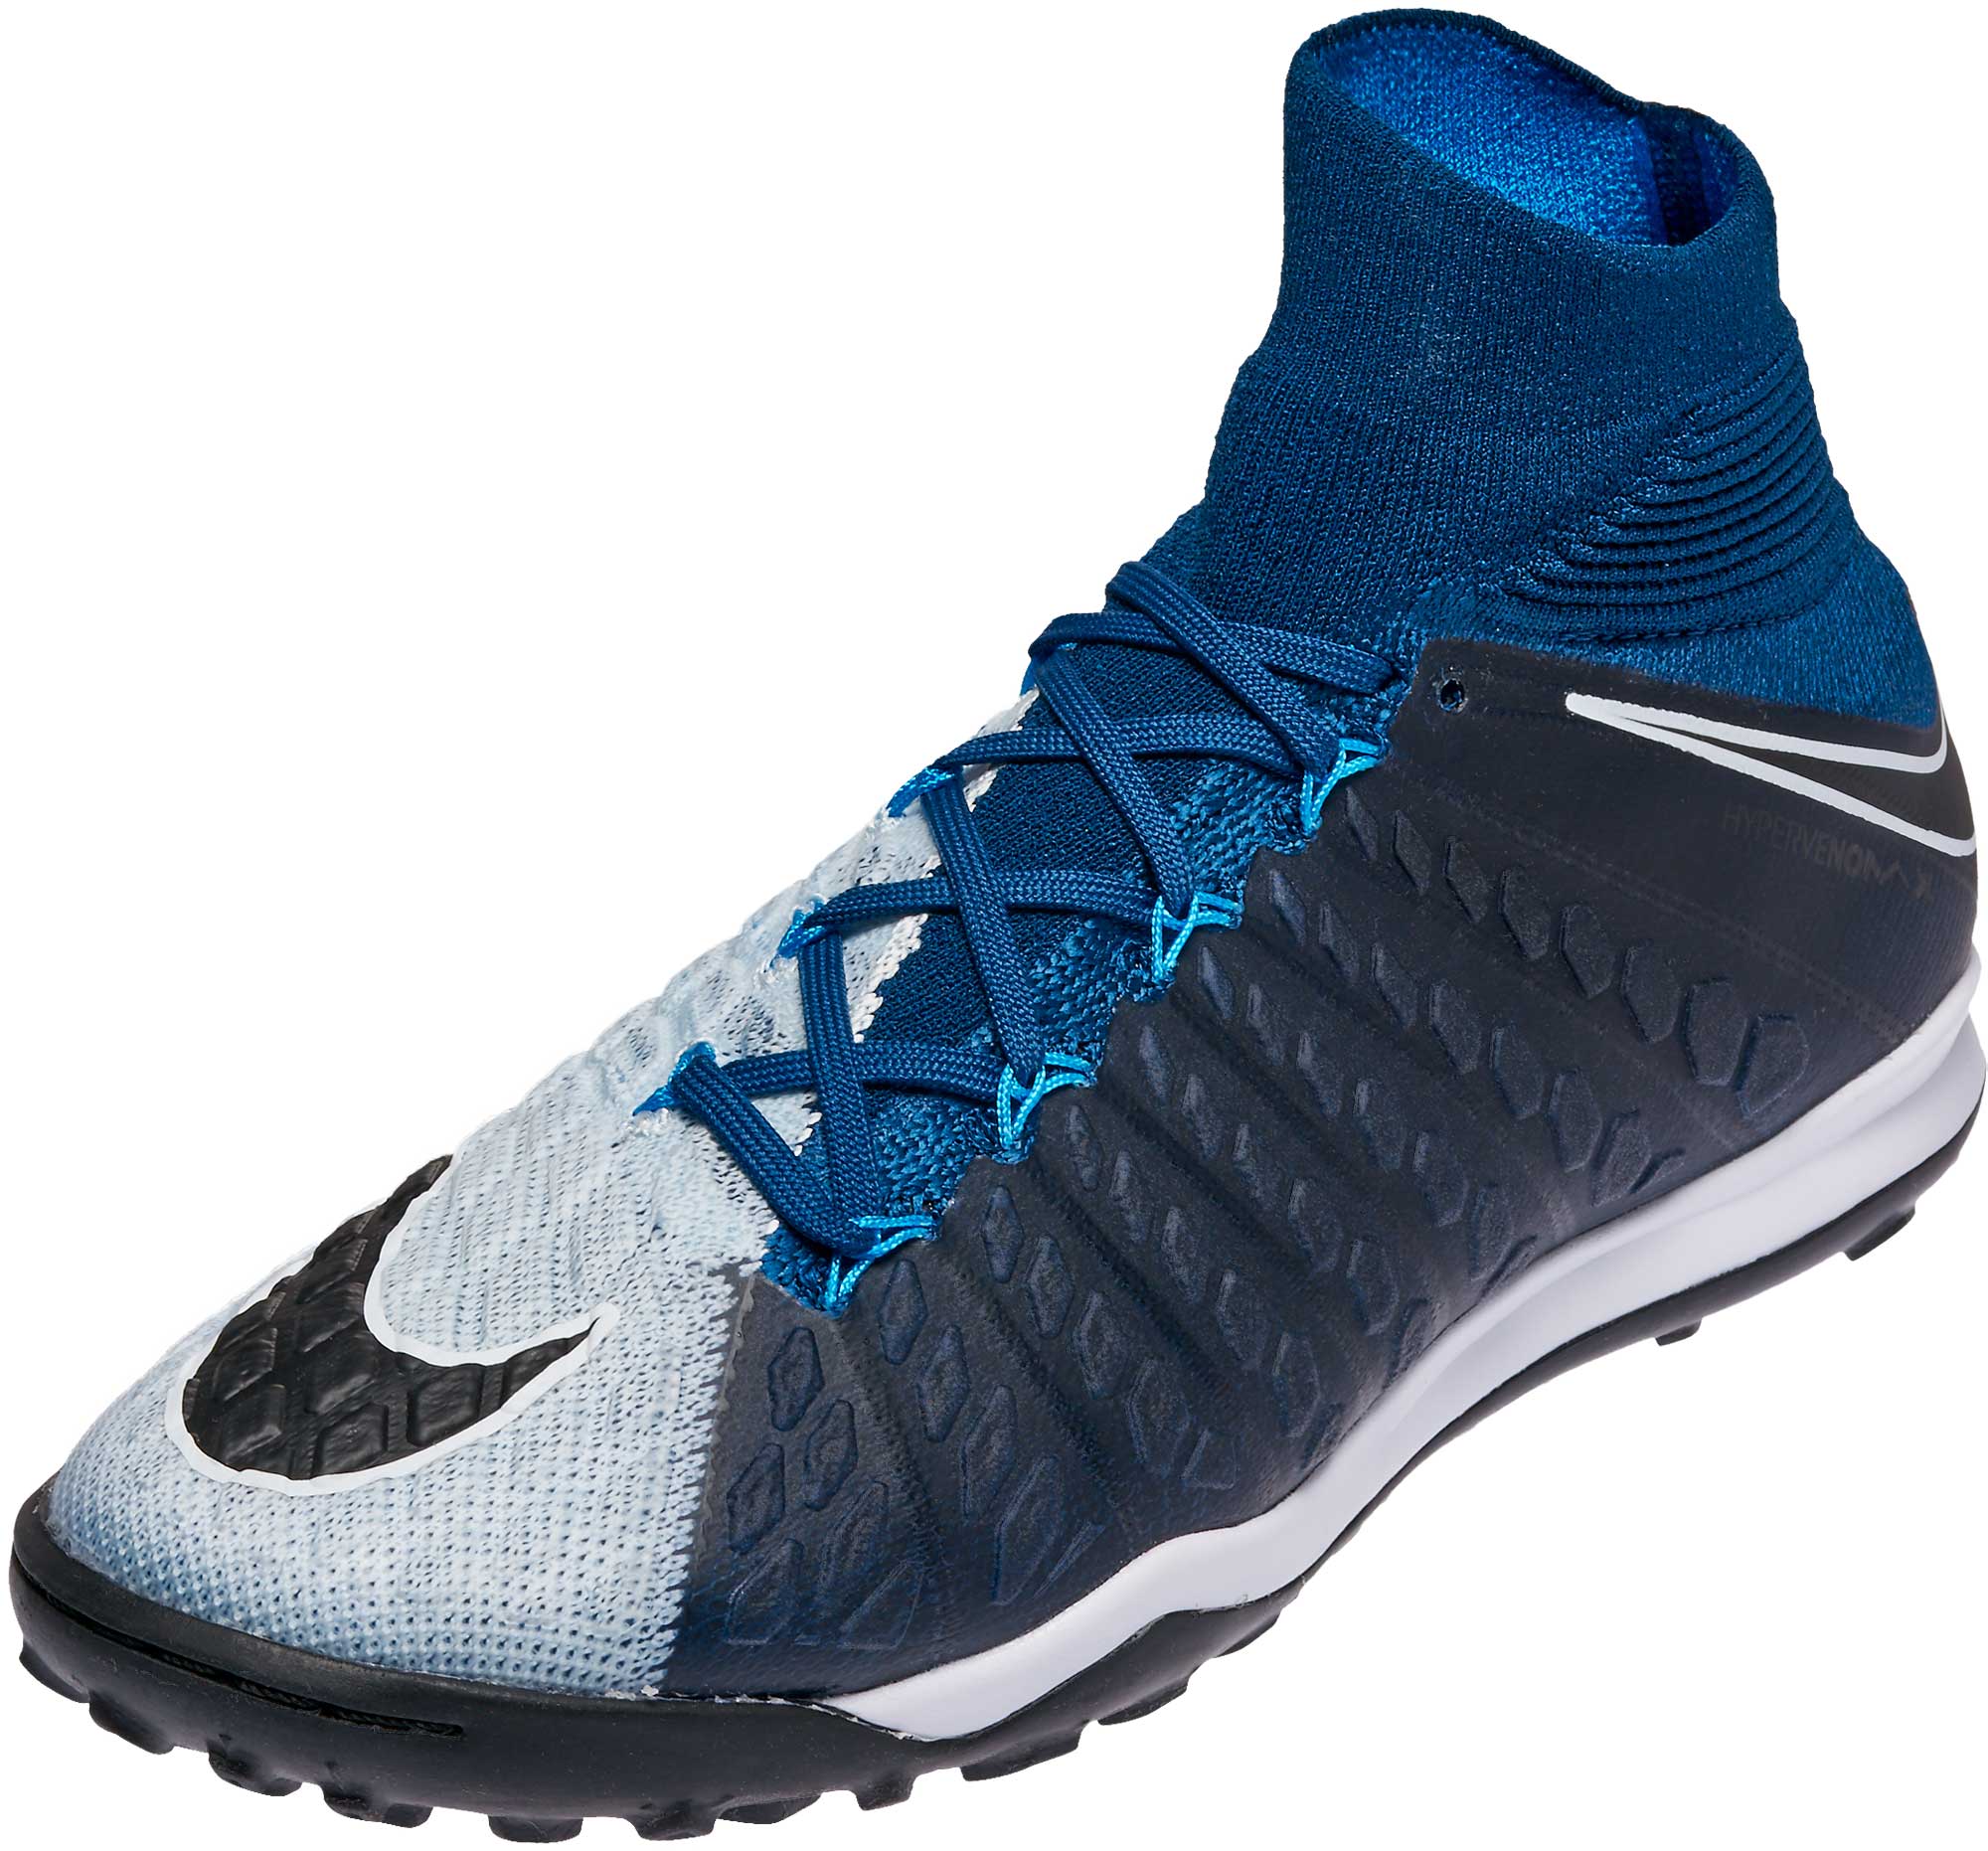 Nike HypervenomX Proximo TF - Blue Turf Shoes